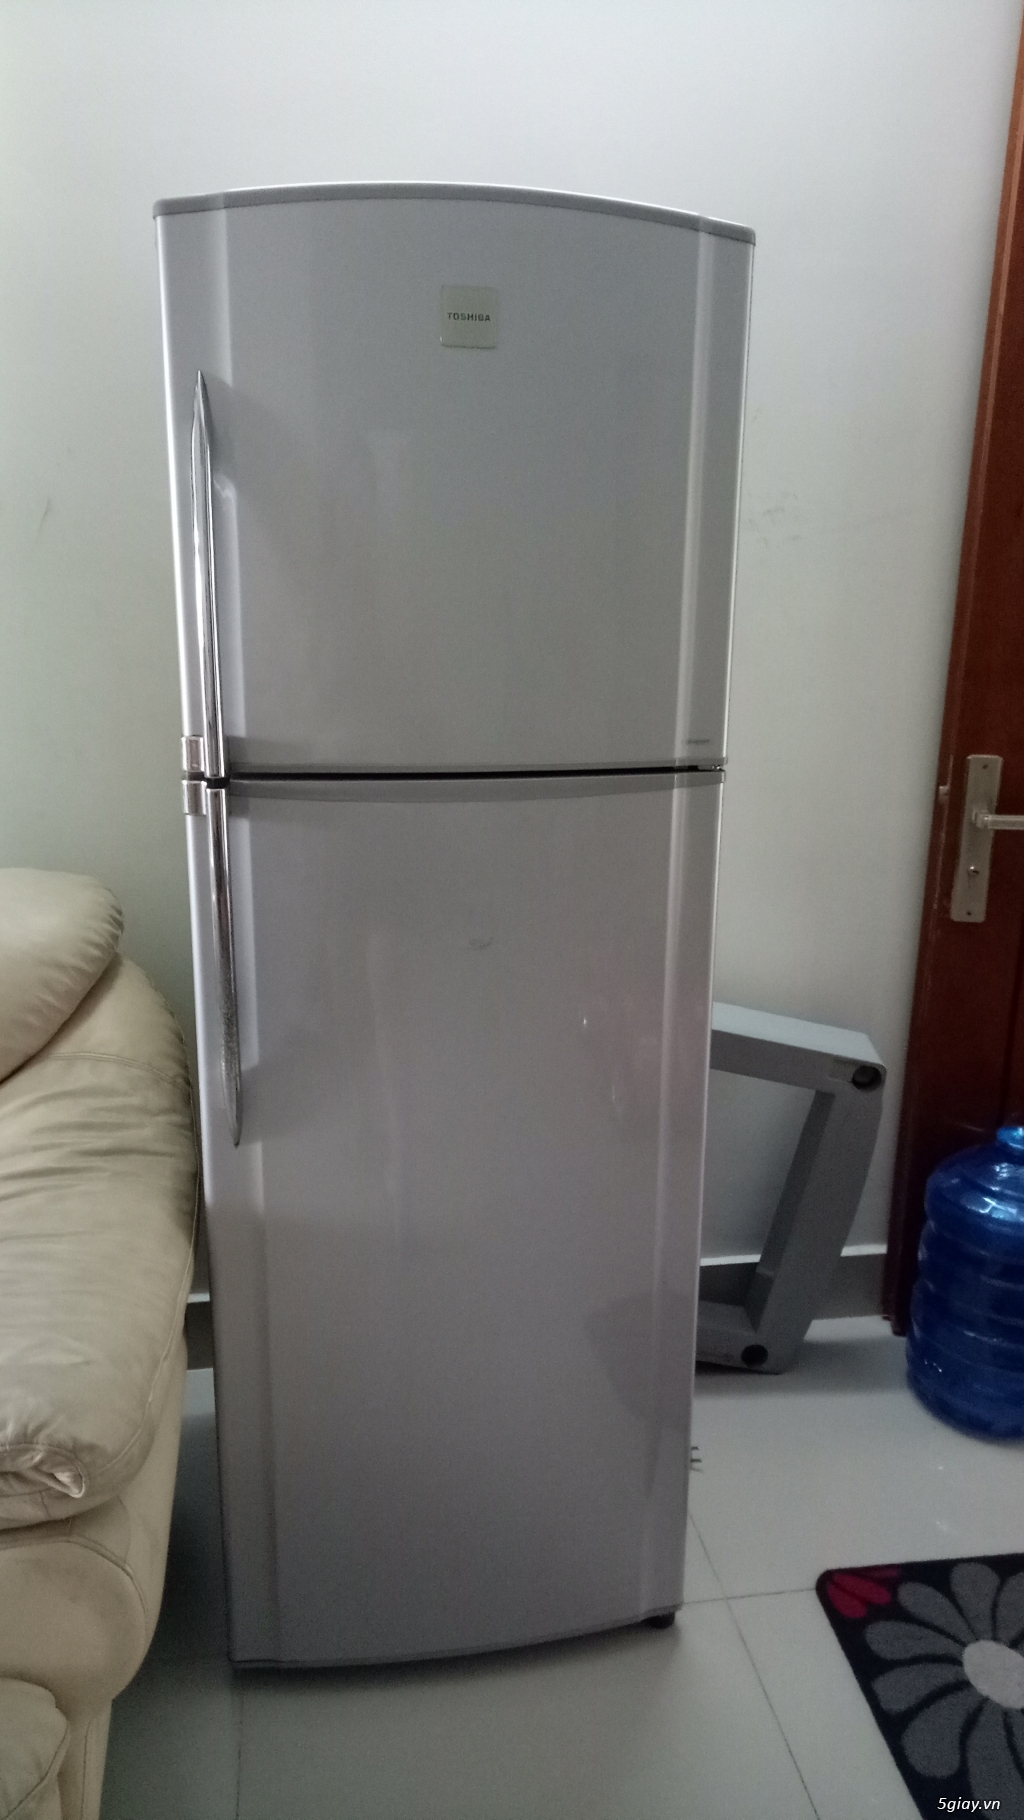 Thanh lý tủ lạnh Tosiba 230 lít